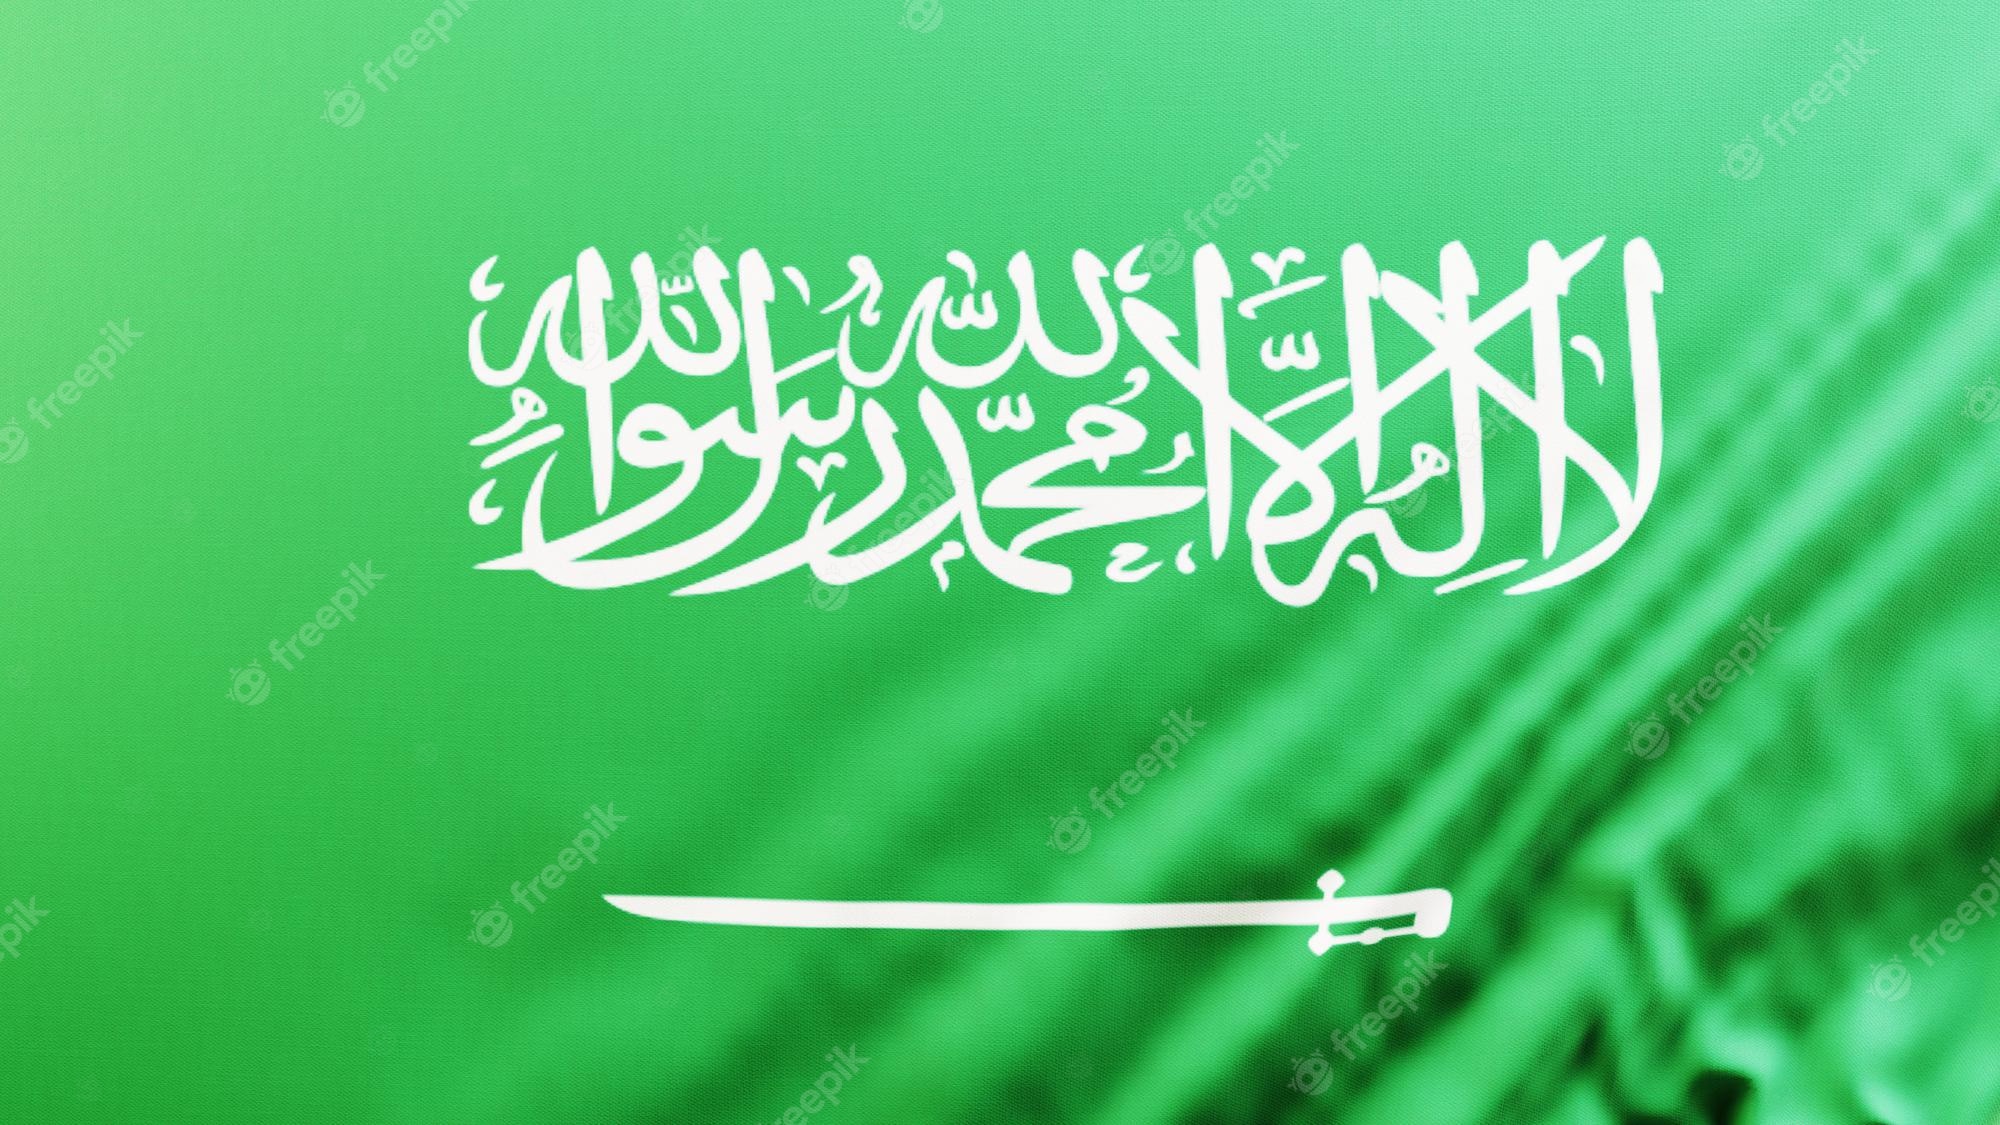 Saudi Arabia Flag Wallpapers